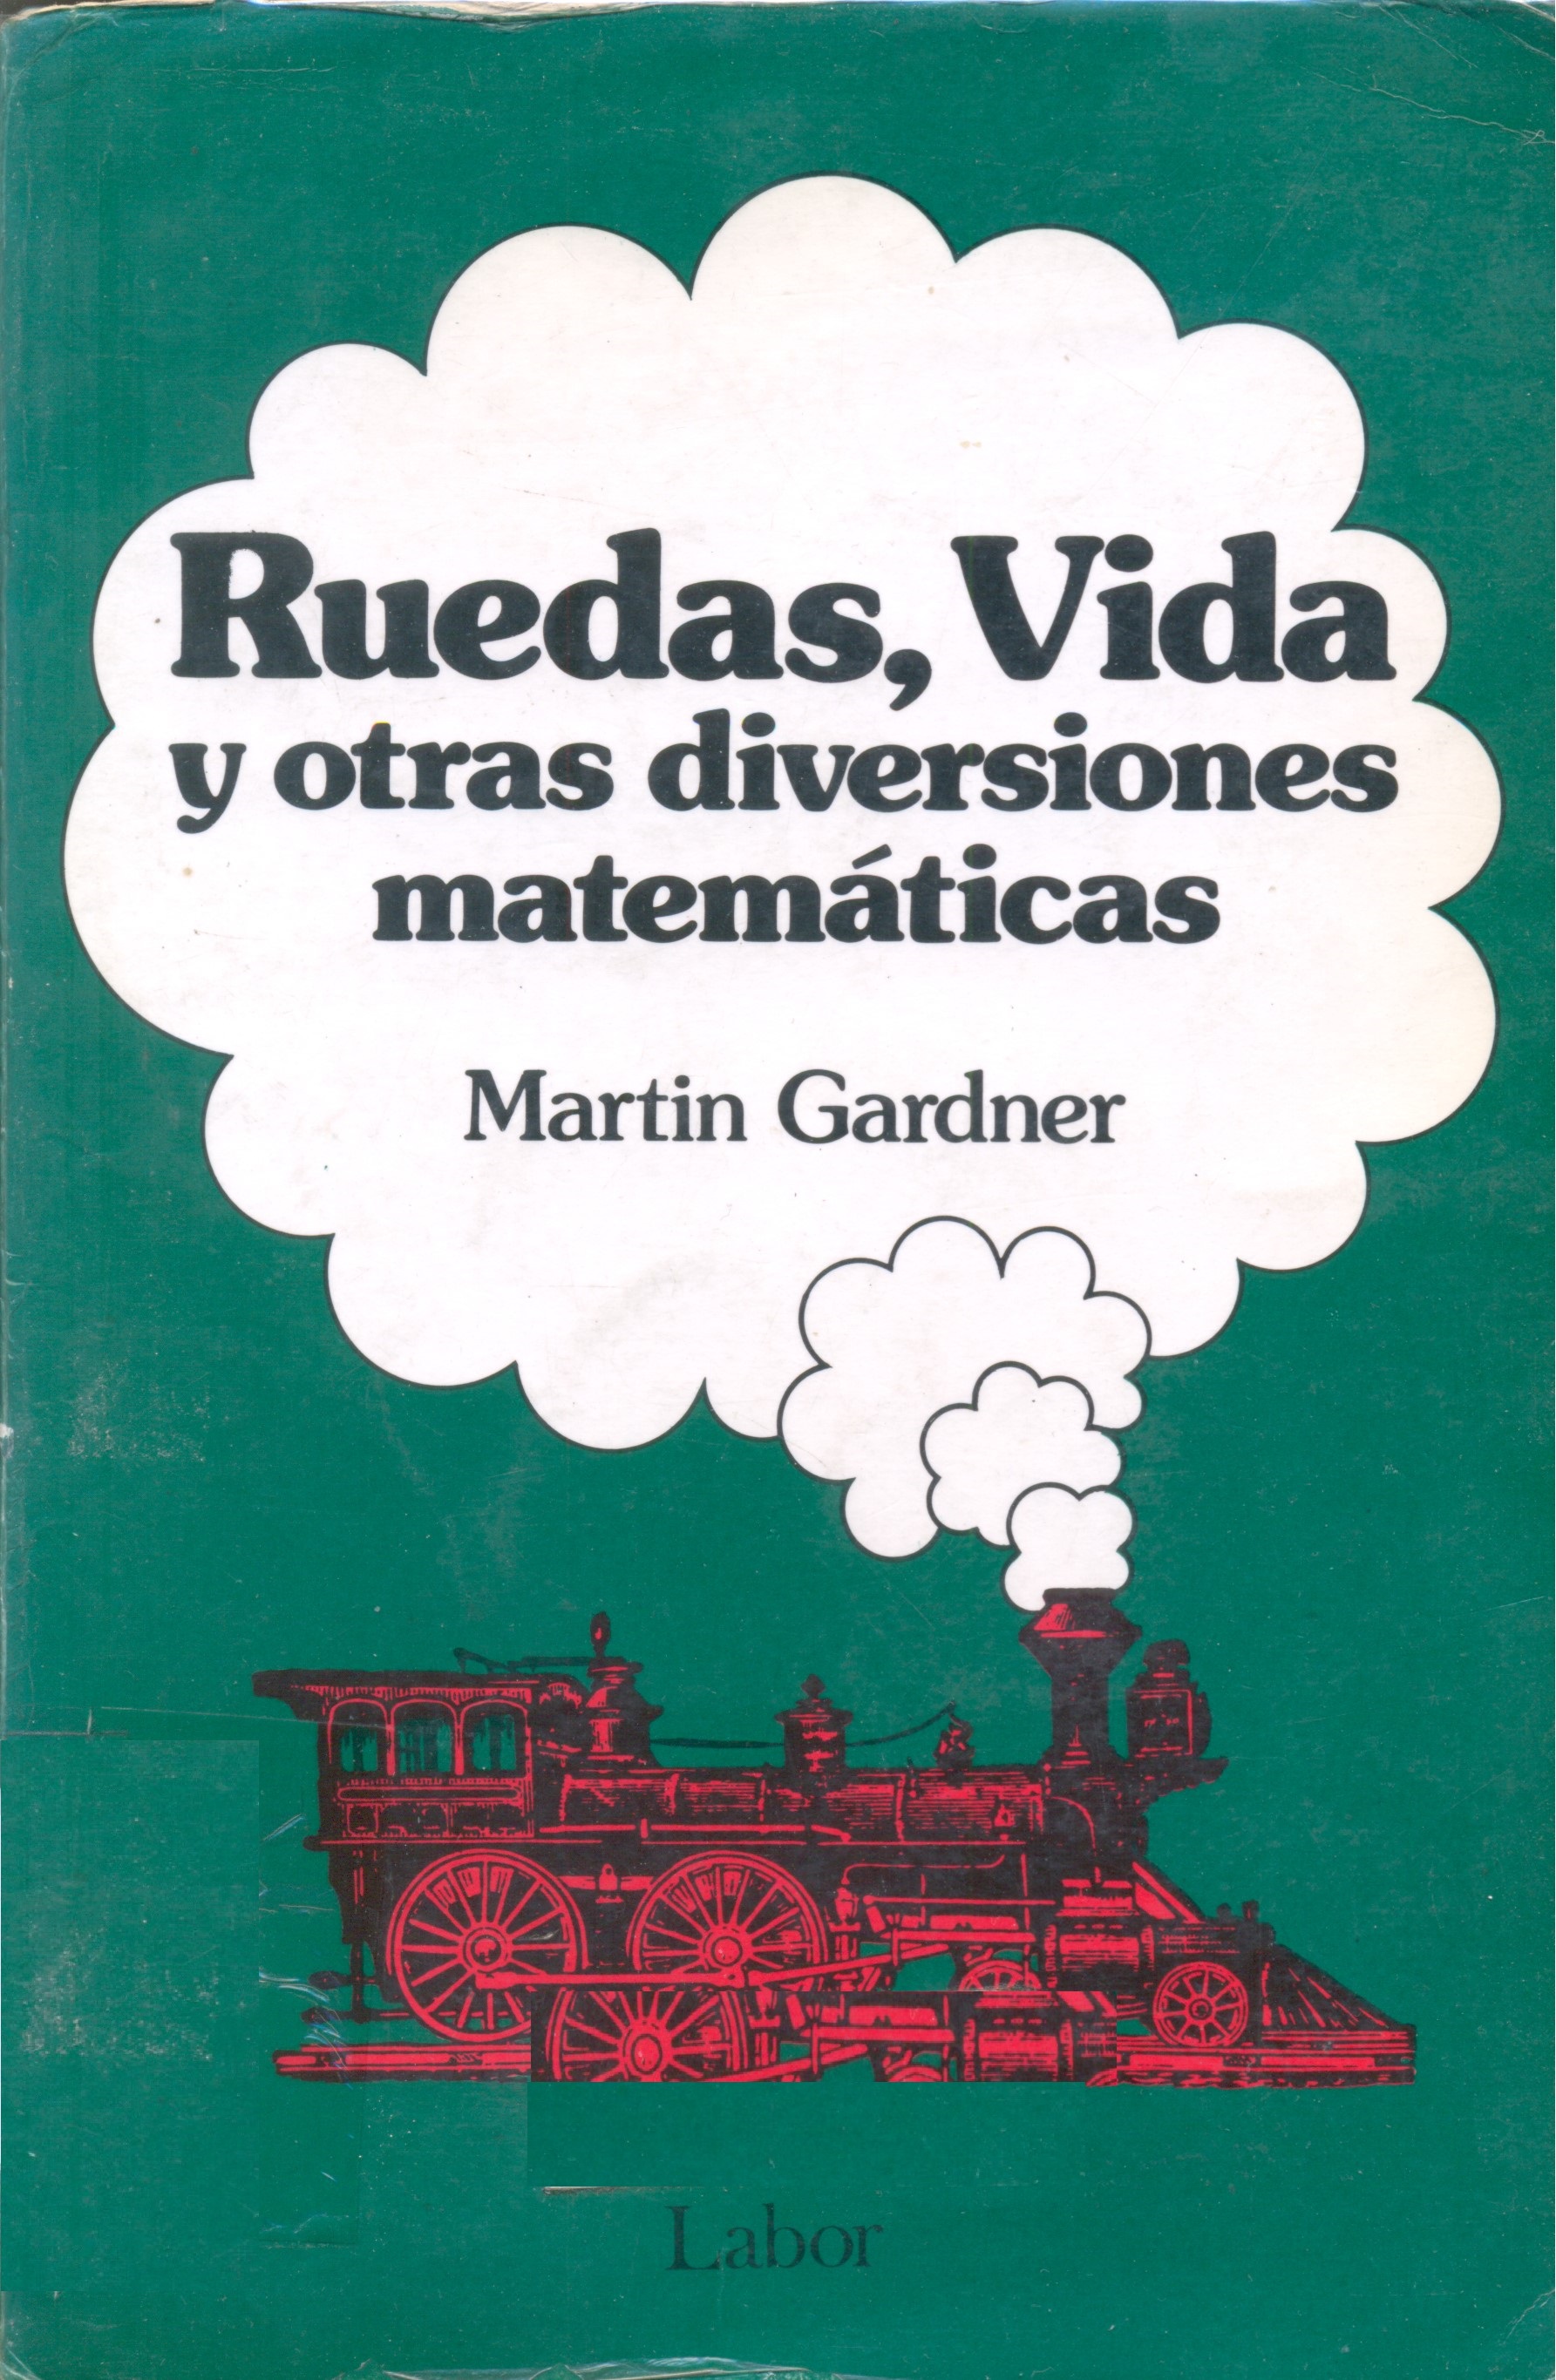 Ruedas, vida y otras diversiones matemáticas / Martin Gardner ; traducción Luis Bou García